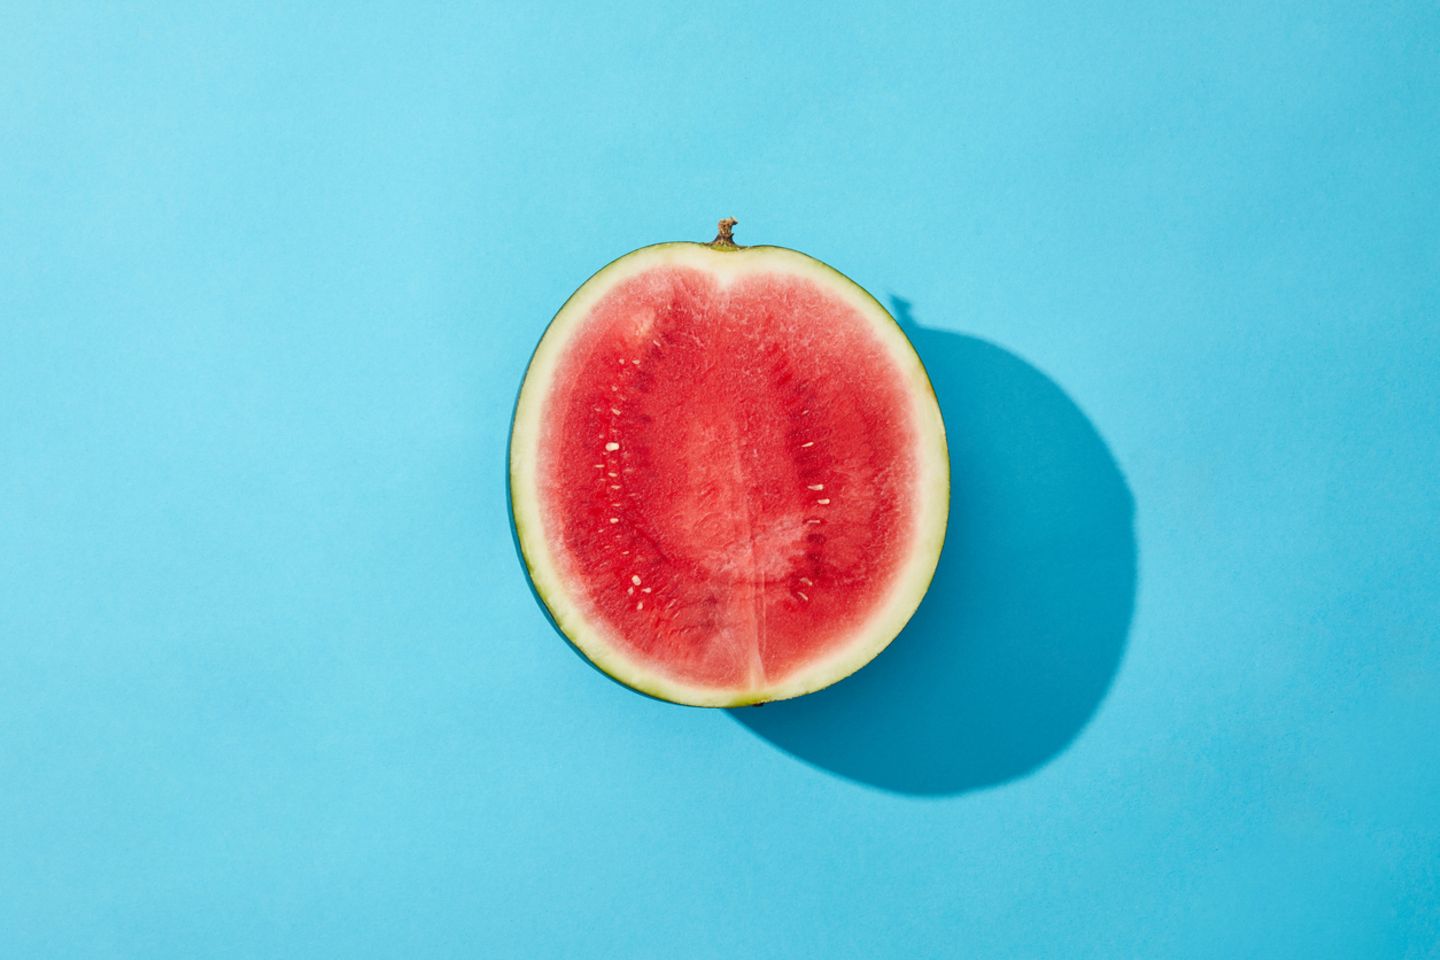 Nach hinten gekippte Gebärmutter: Halbe Melone vor blauem Hintergrund